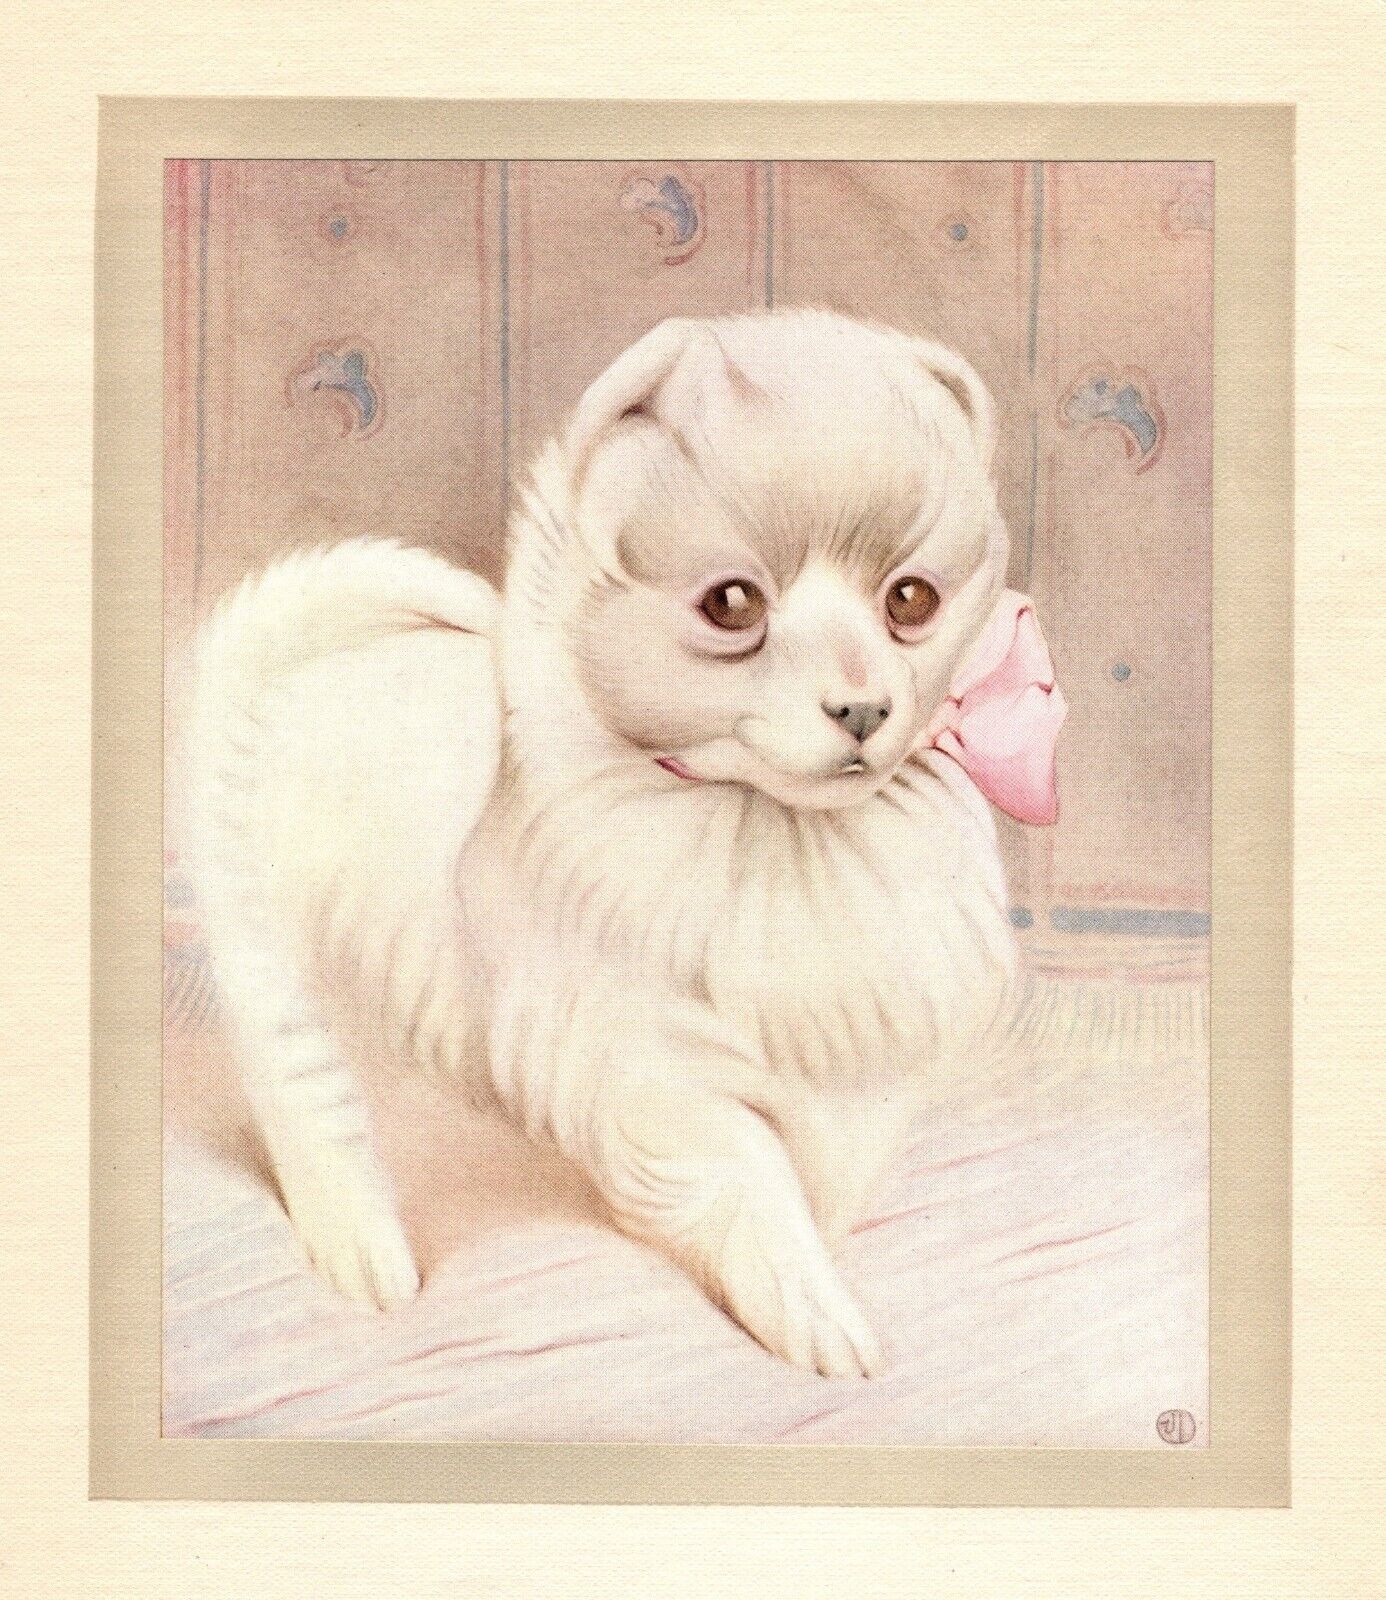 Antique Pomeranian Print c1915 E J Detmold Pomeranian Dog Art Illustration 5155m